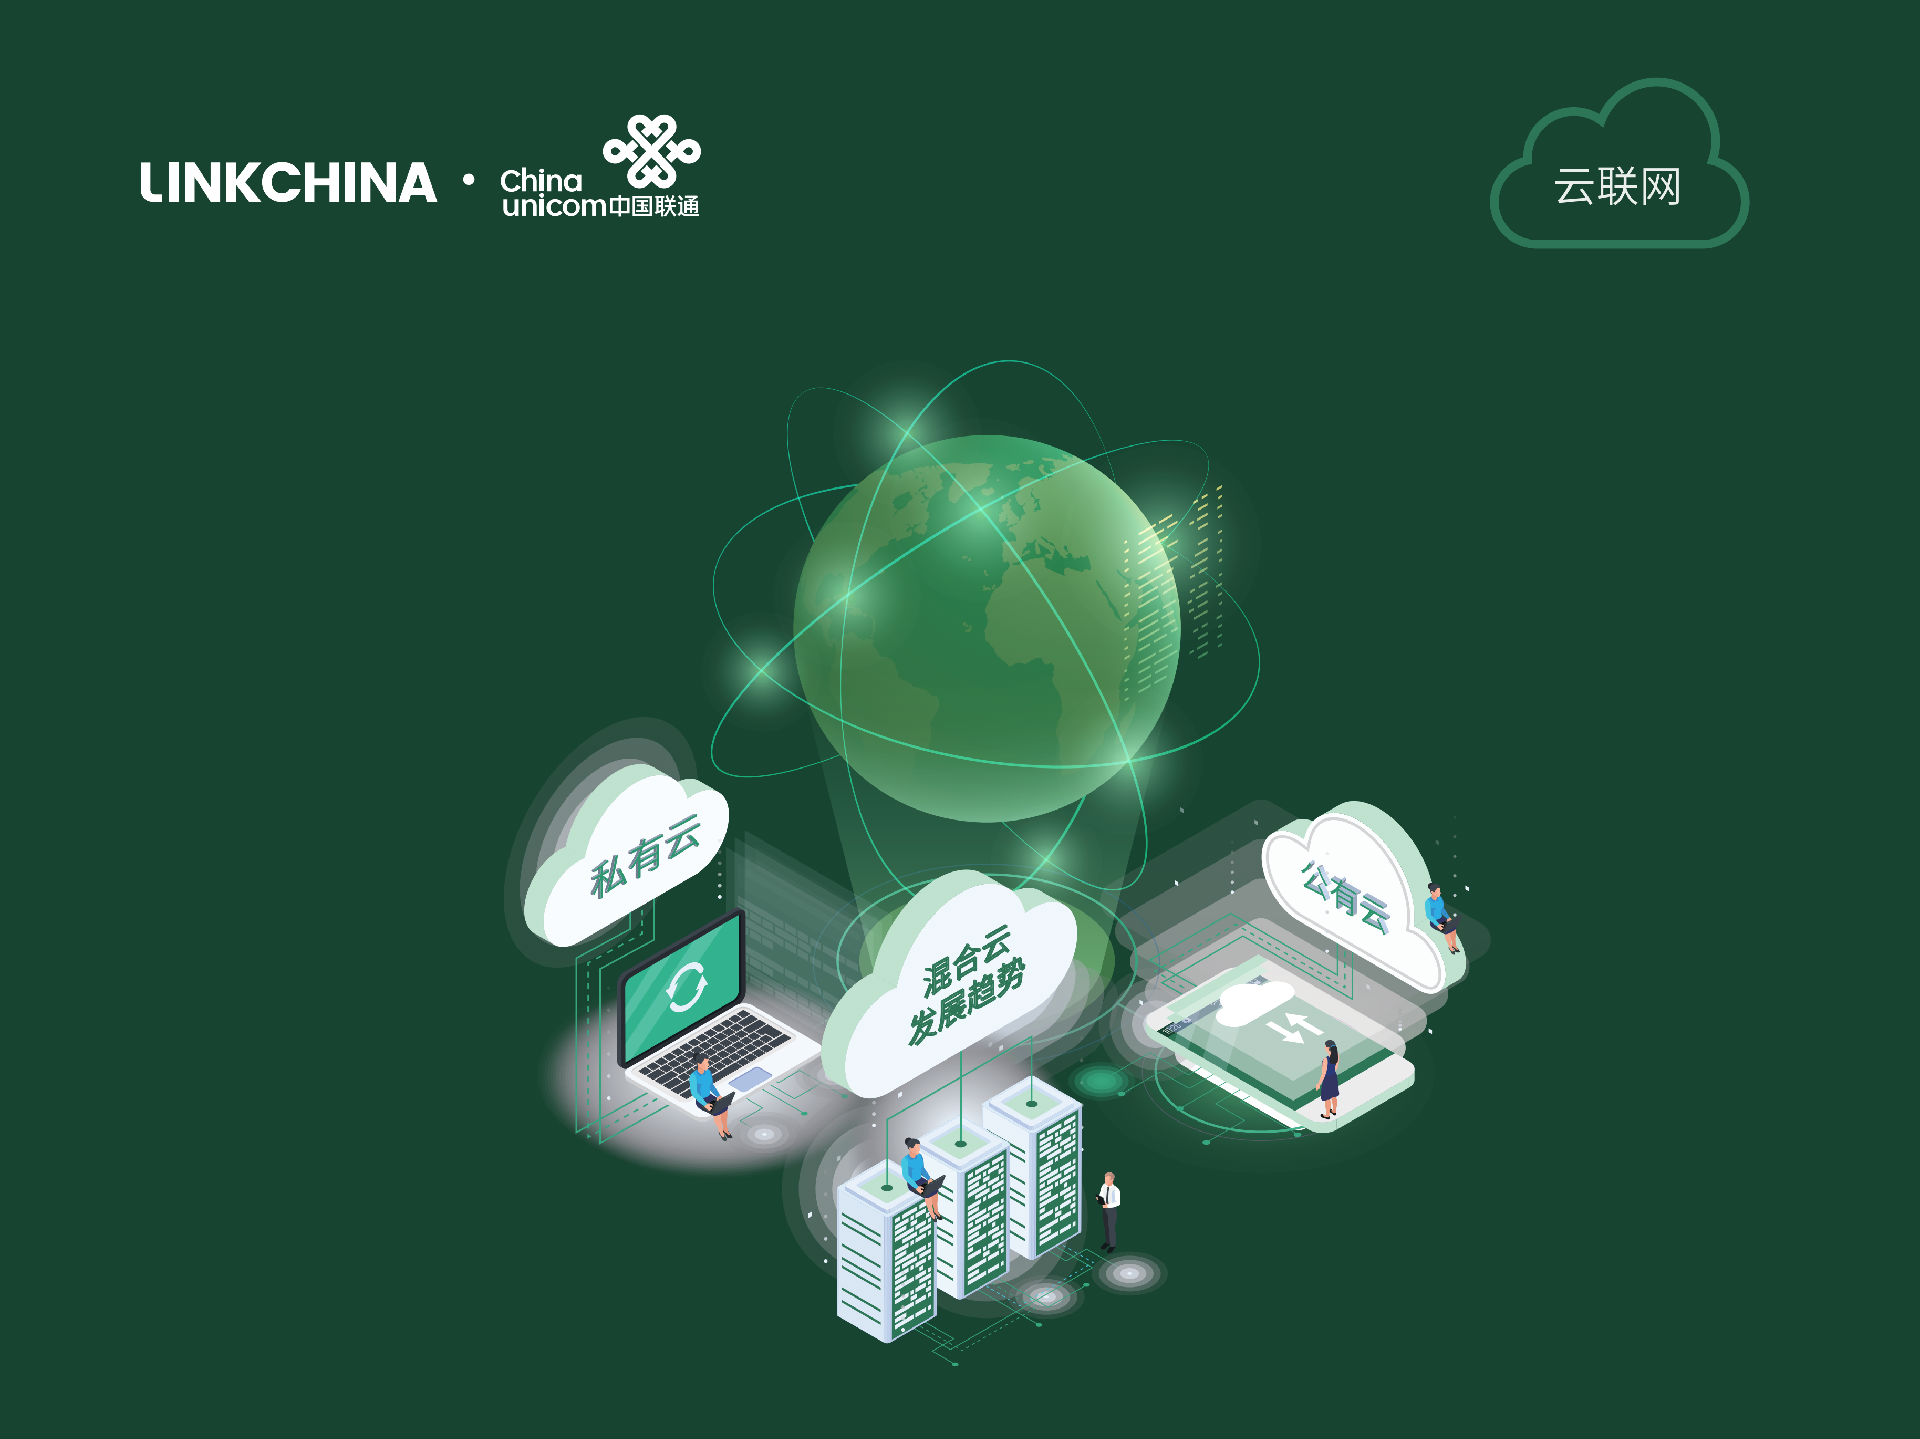 联华世纪正式成为深圳市前海新型互联网交换中心首批合作伙伴